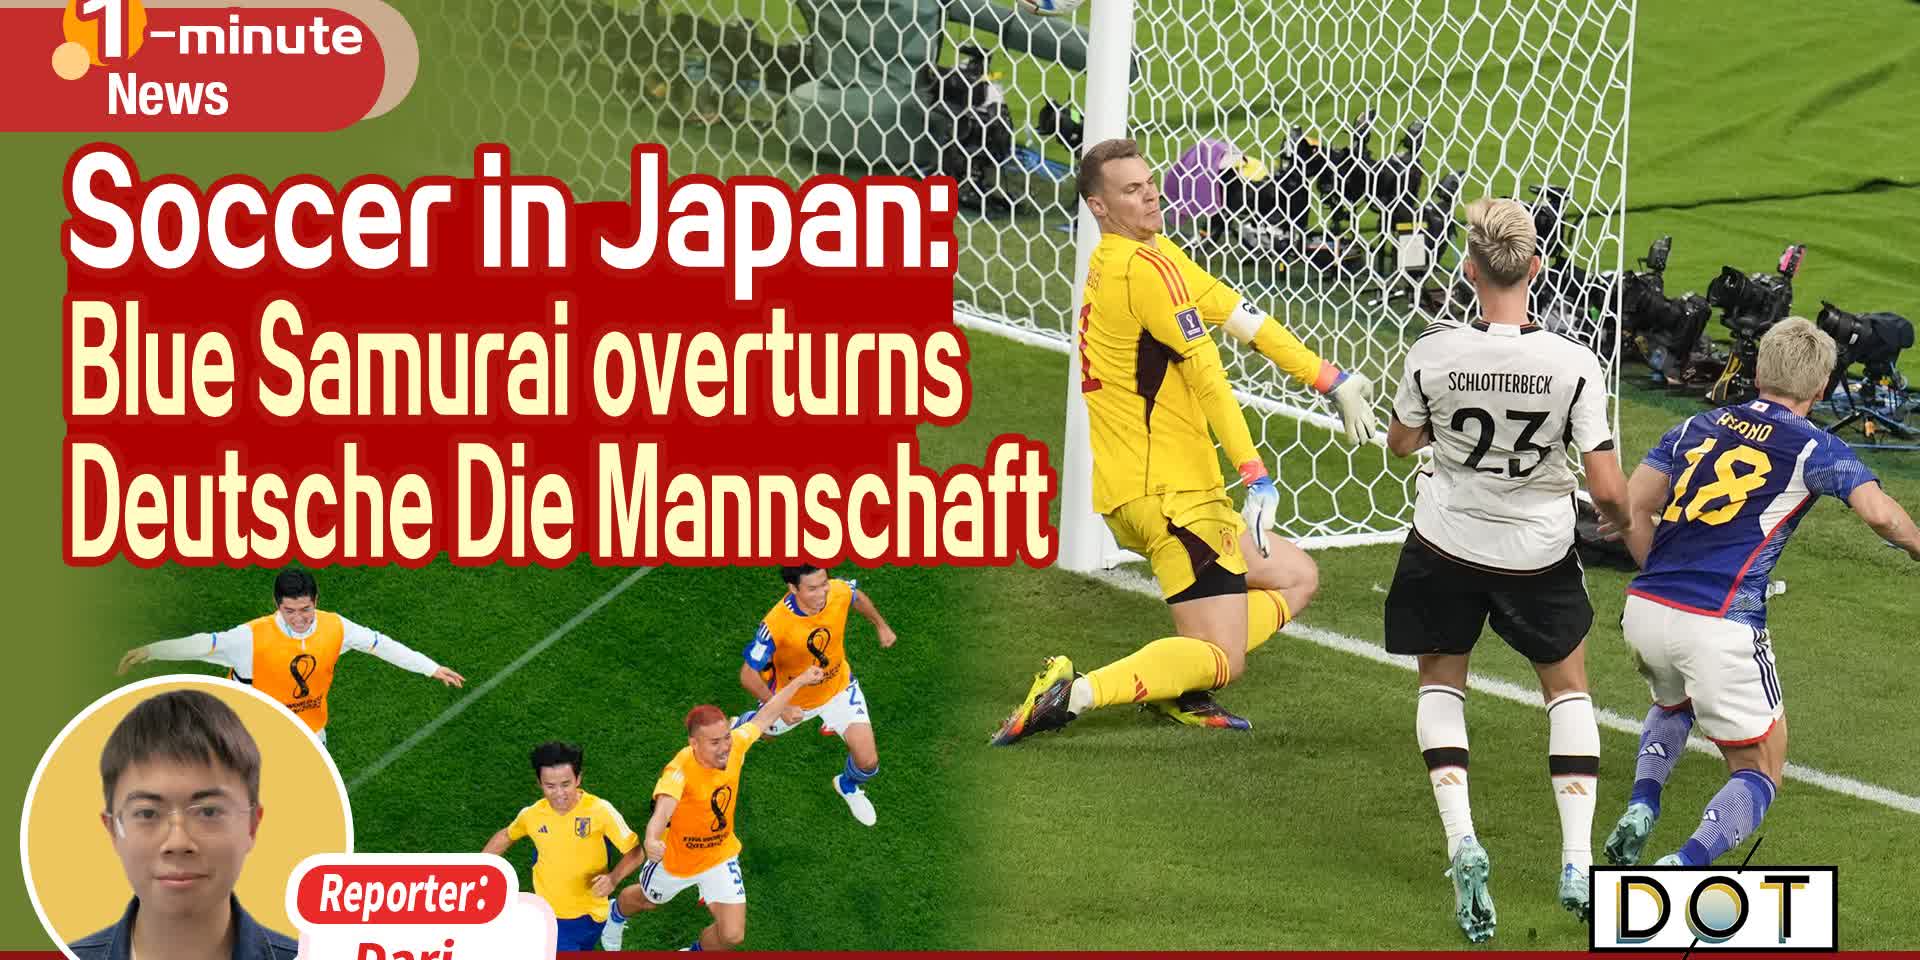 1-minute News | Soccer in Japan: Blue Samurai overturns Deutsche Die Mannschaft